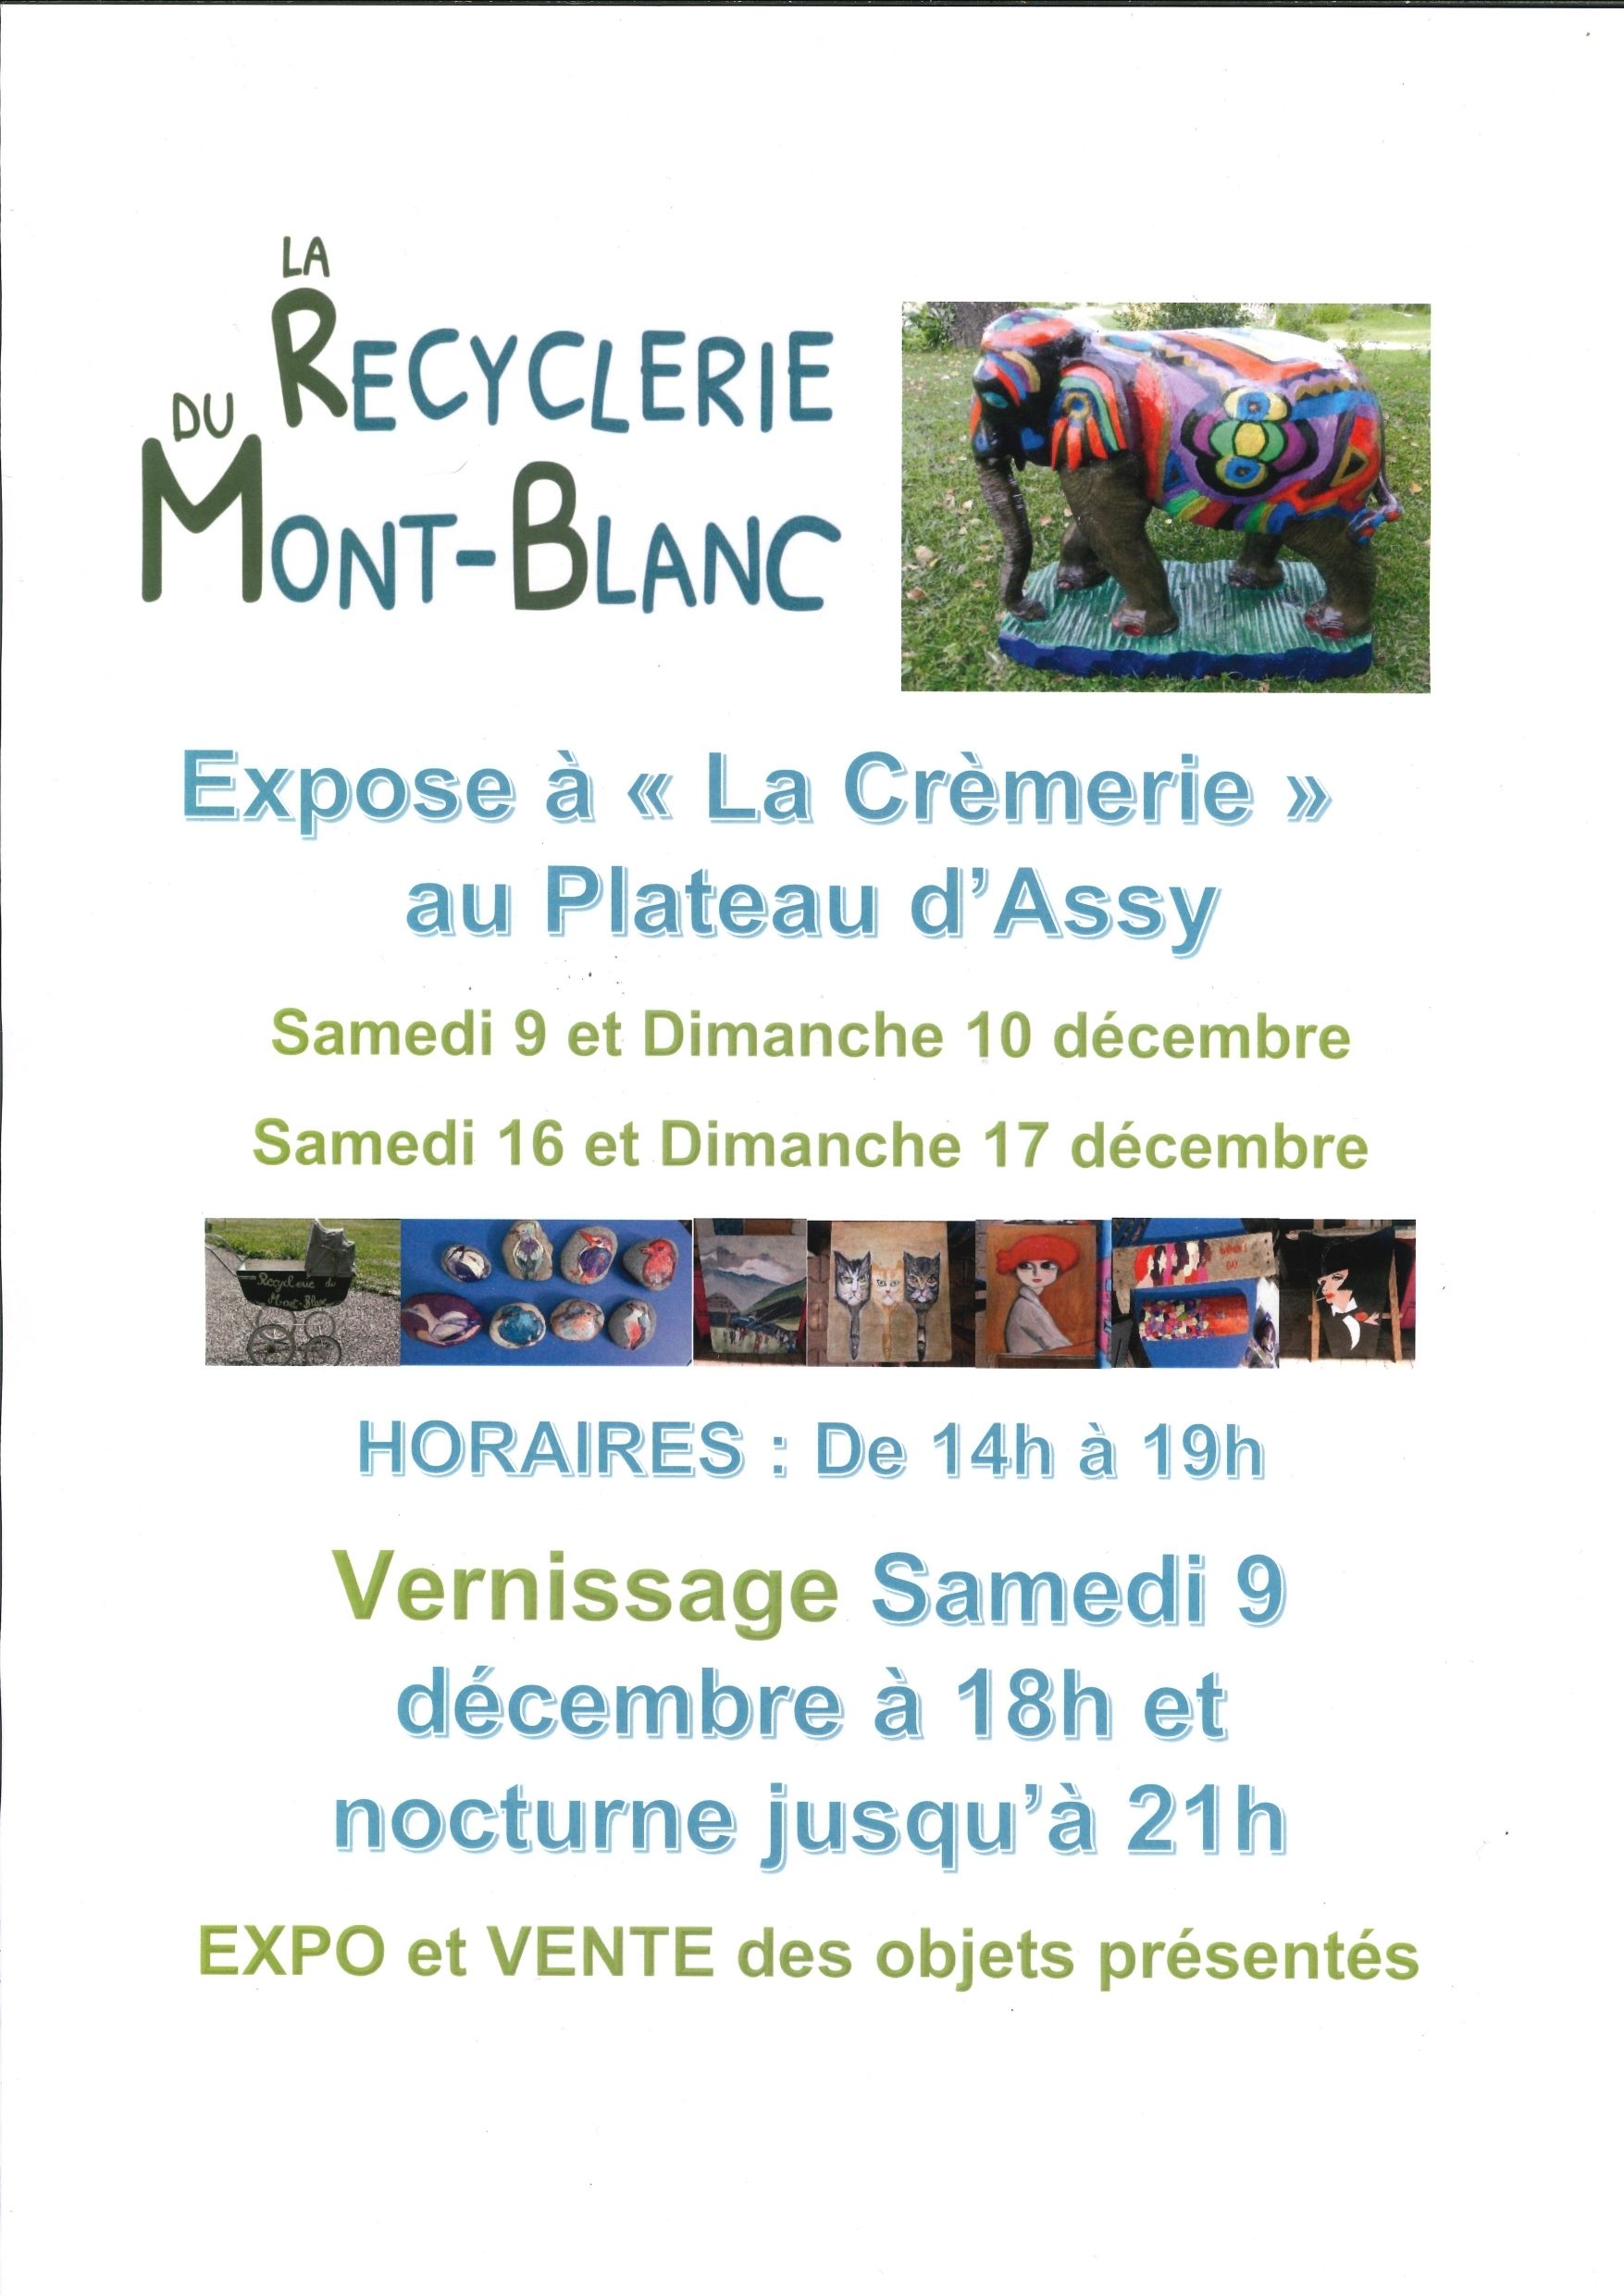 La Recyclerie du Mont-Blanc Expose à La Crèmerie